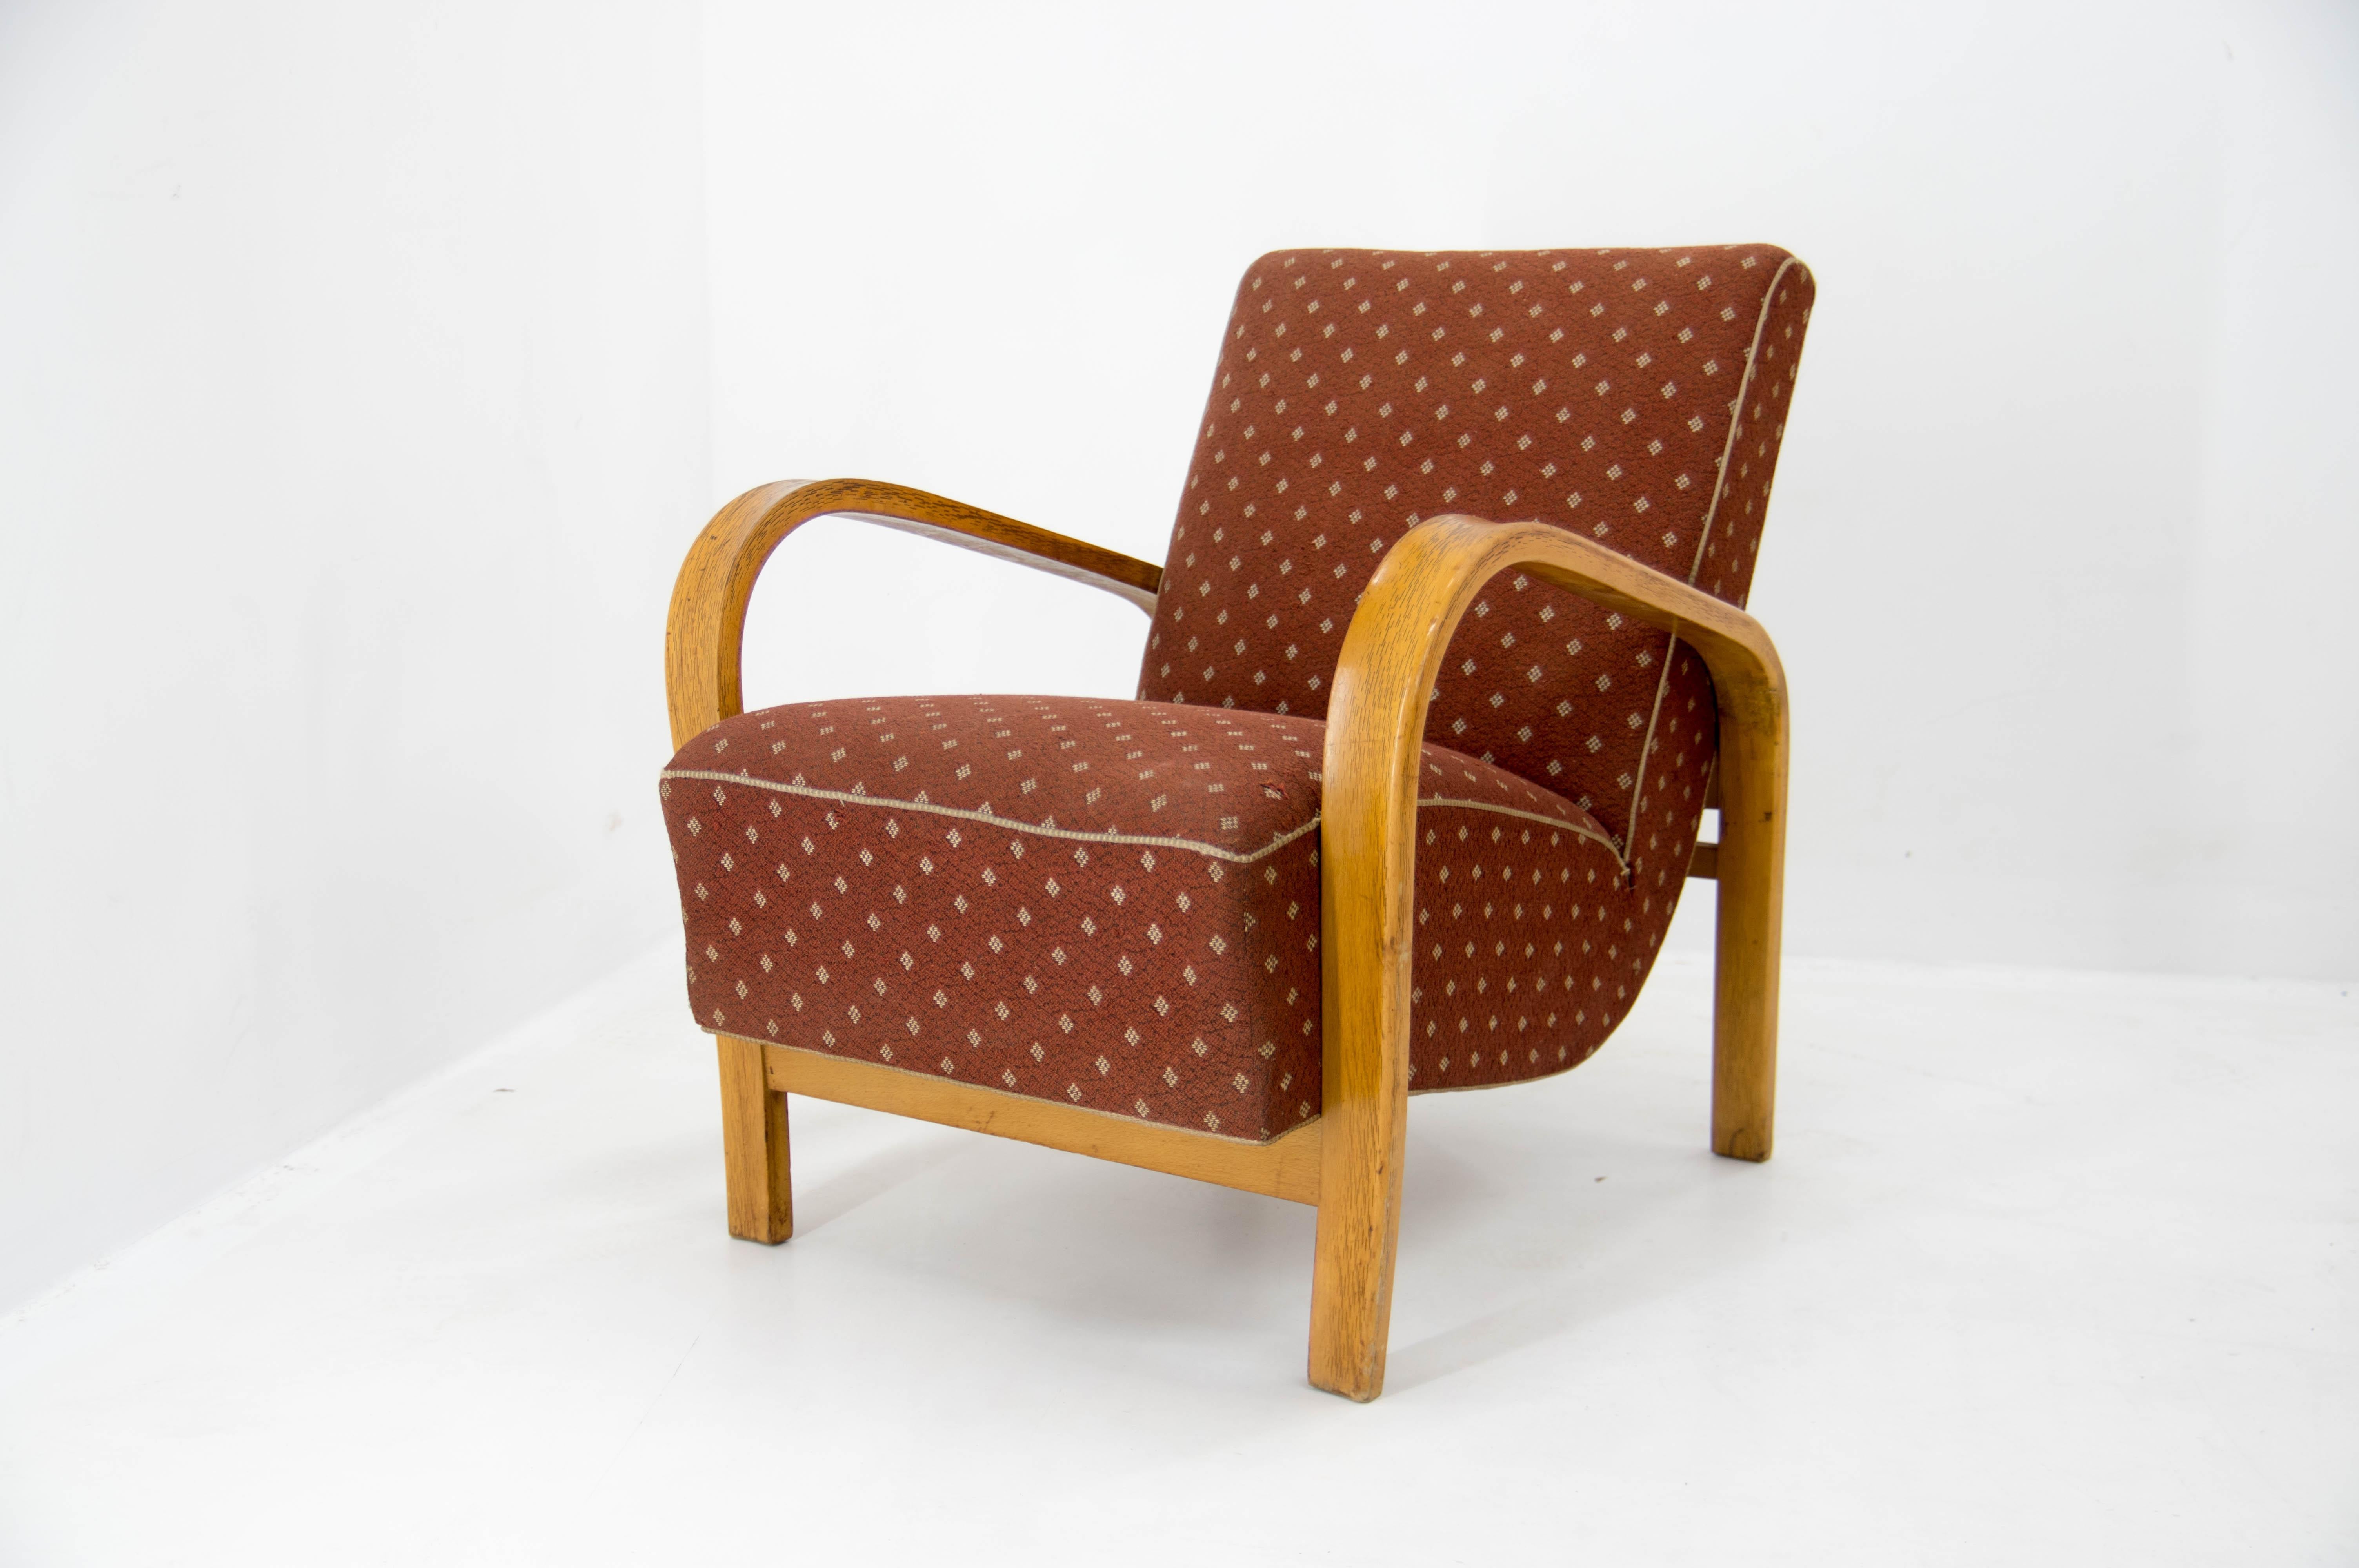 Sehr gut erhaltener Sessel, entworfen von Kozelka und Kropacek für Interier Praha.
Holz in perfektem Zustand, Polsterung mit einem kleinen Defekt siehe Foto. Federkern in perfektem Zustand, sehr stabil und komfortabel.

